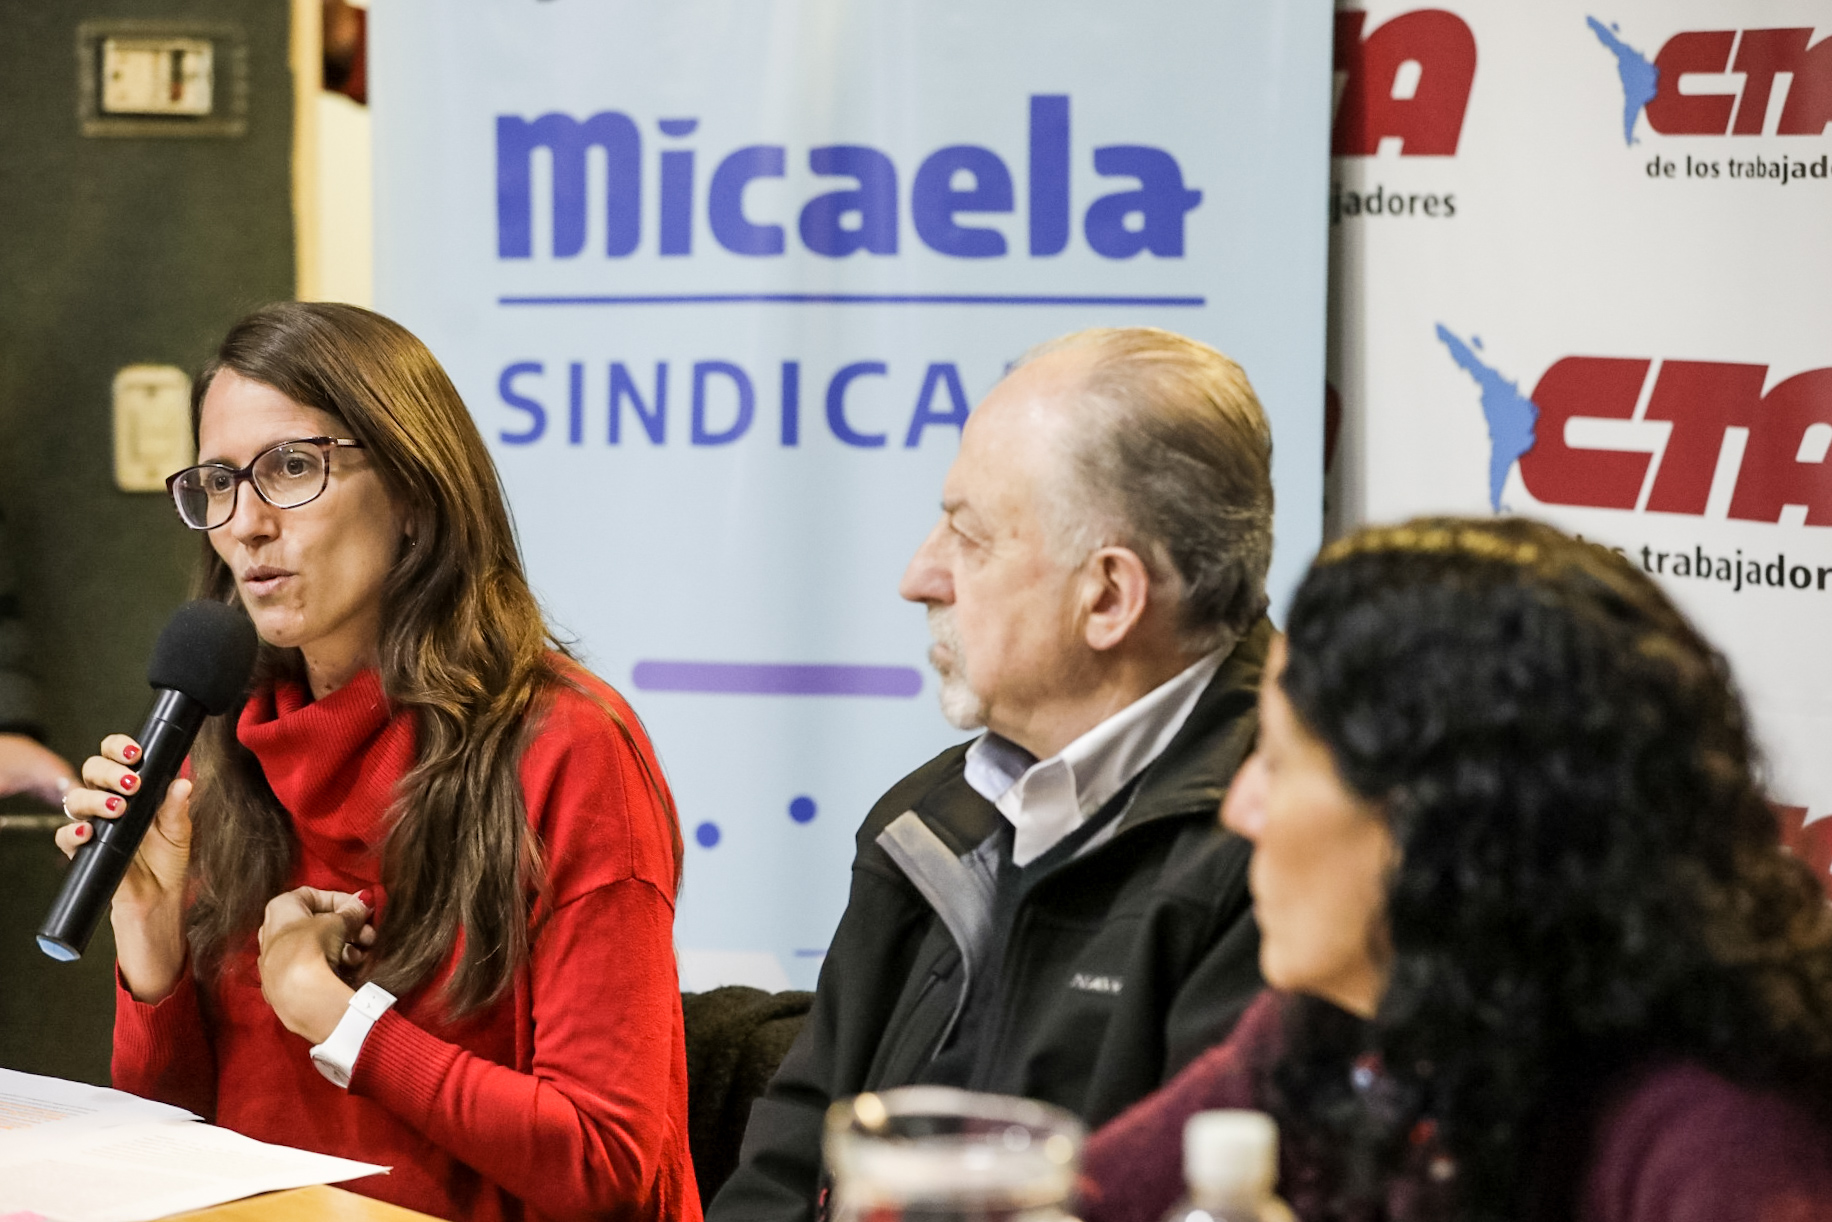 Micaela Sindical: la CTA de los Trabajadores se capacitó en género y diversidad